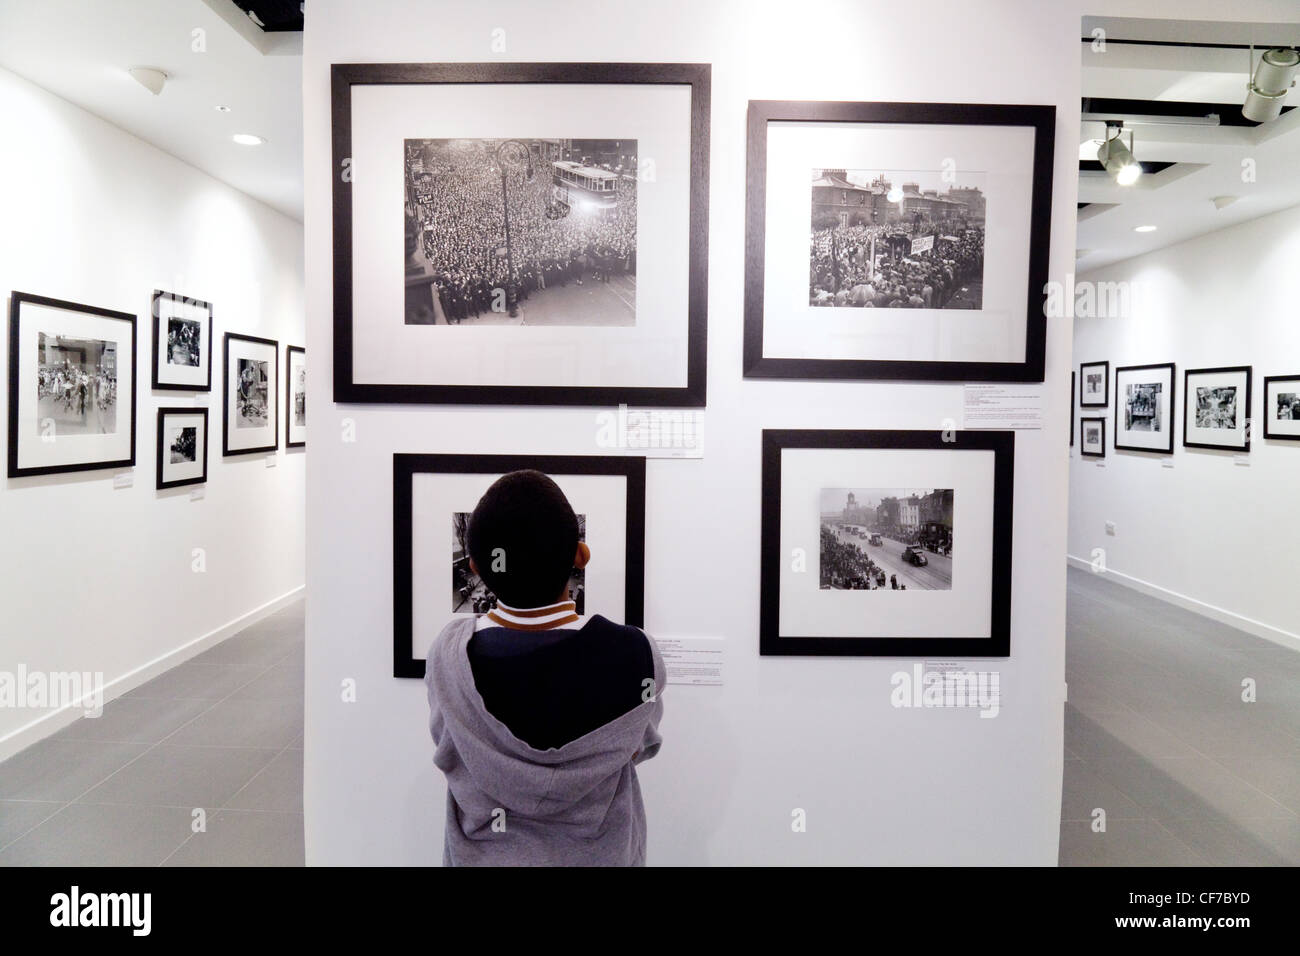 Ein Kind an der Fotos in einer Ausstellung zu betrachten; die Getty Gallery, Westfield Shopping Center Stratford London Großbritannien Stockfoto